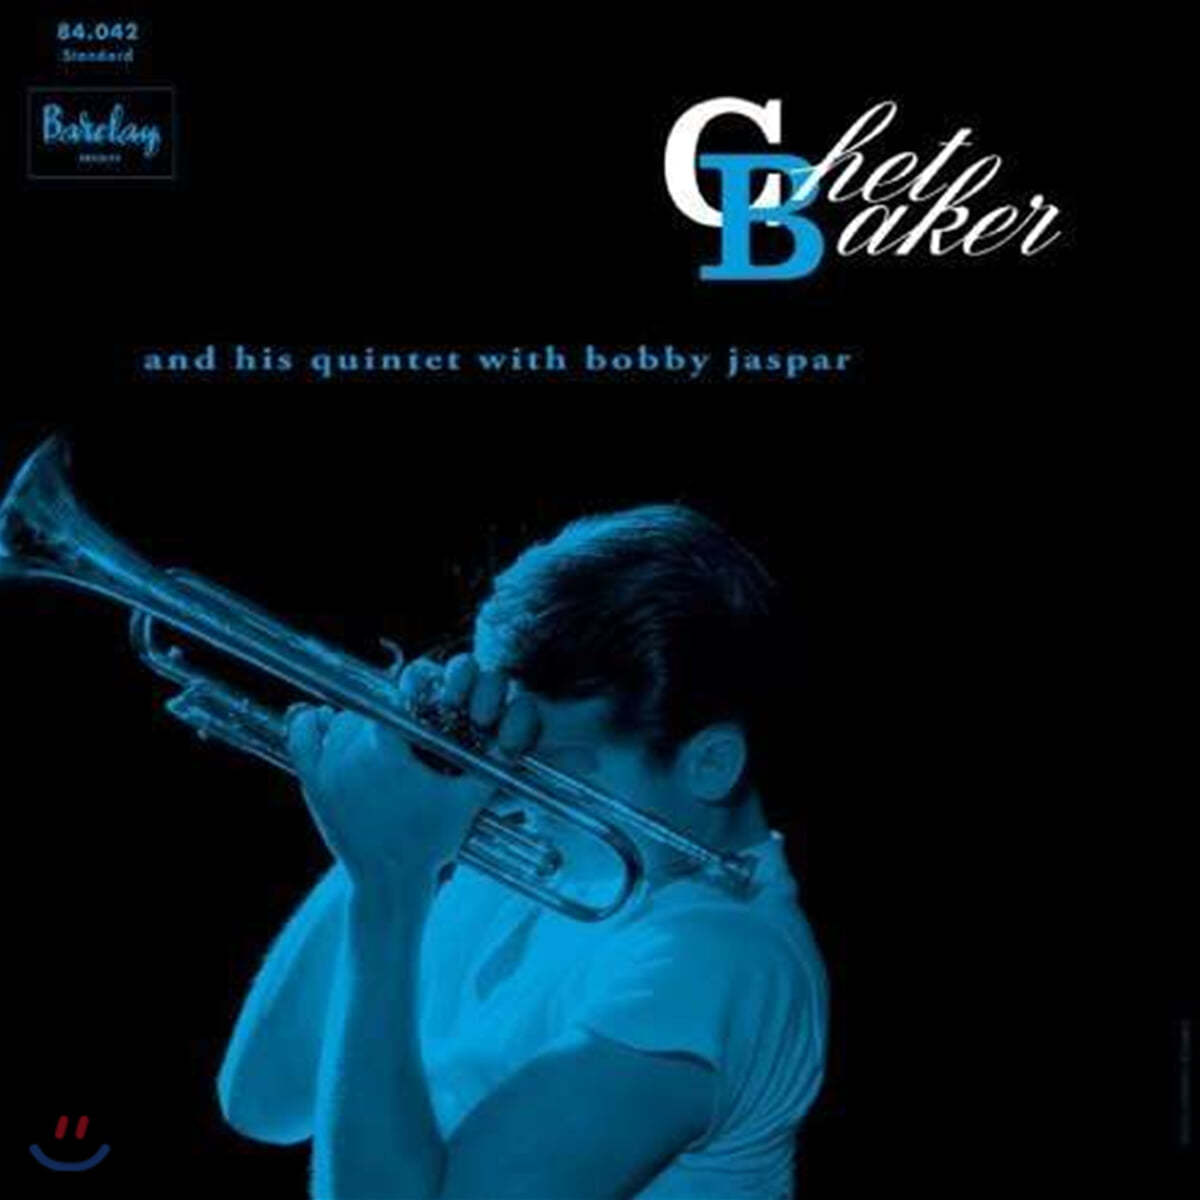 Chet Baker (쳇 베이커) - Chet Baker And His Quintet With Bobby Jaspar (Barclay 1956) [LP] 